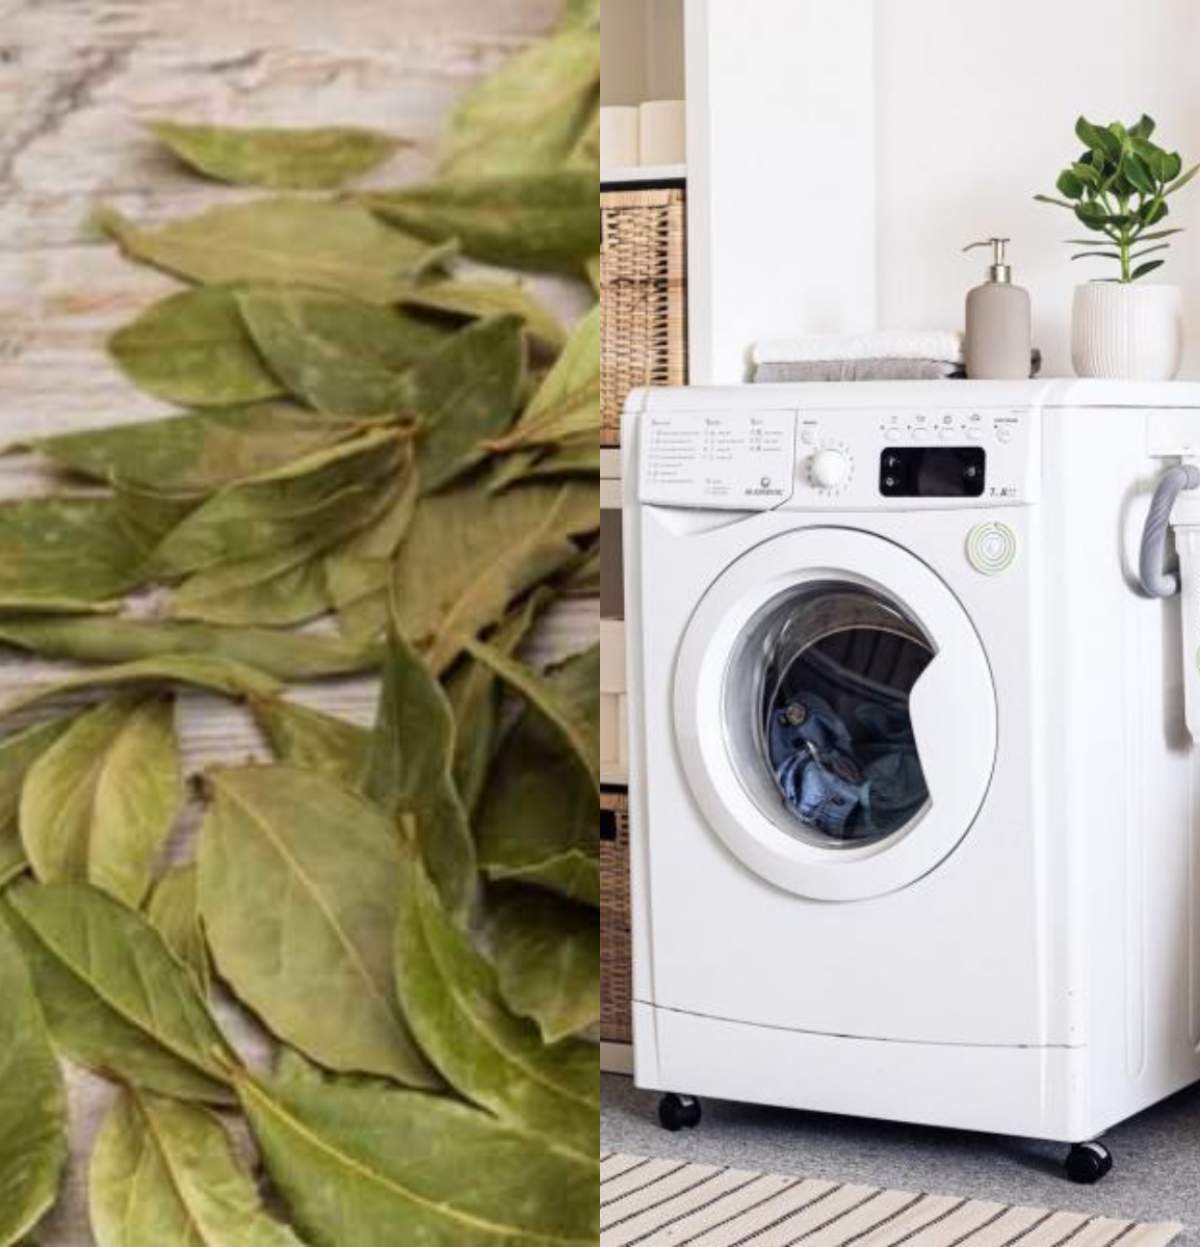 Ce se întâmplă dacă pui foi de dafin în mașina de spălat. Rezultatul este uimitor